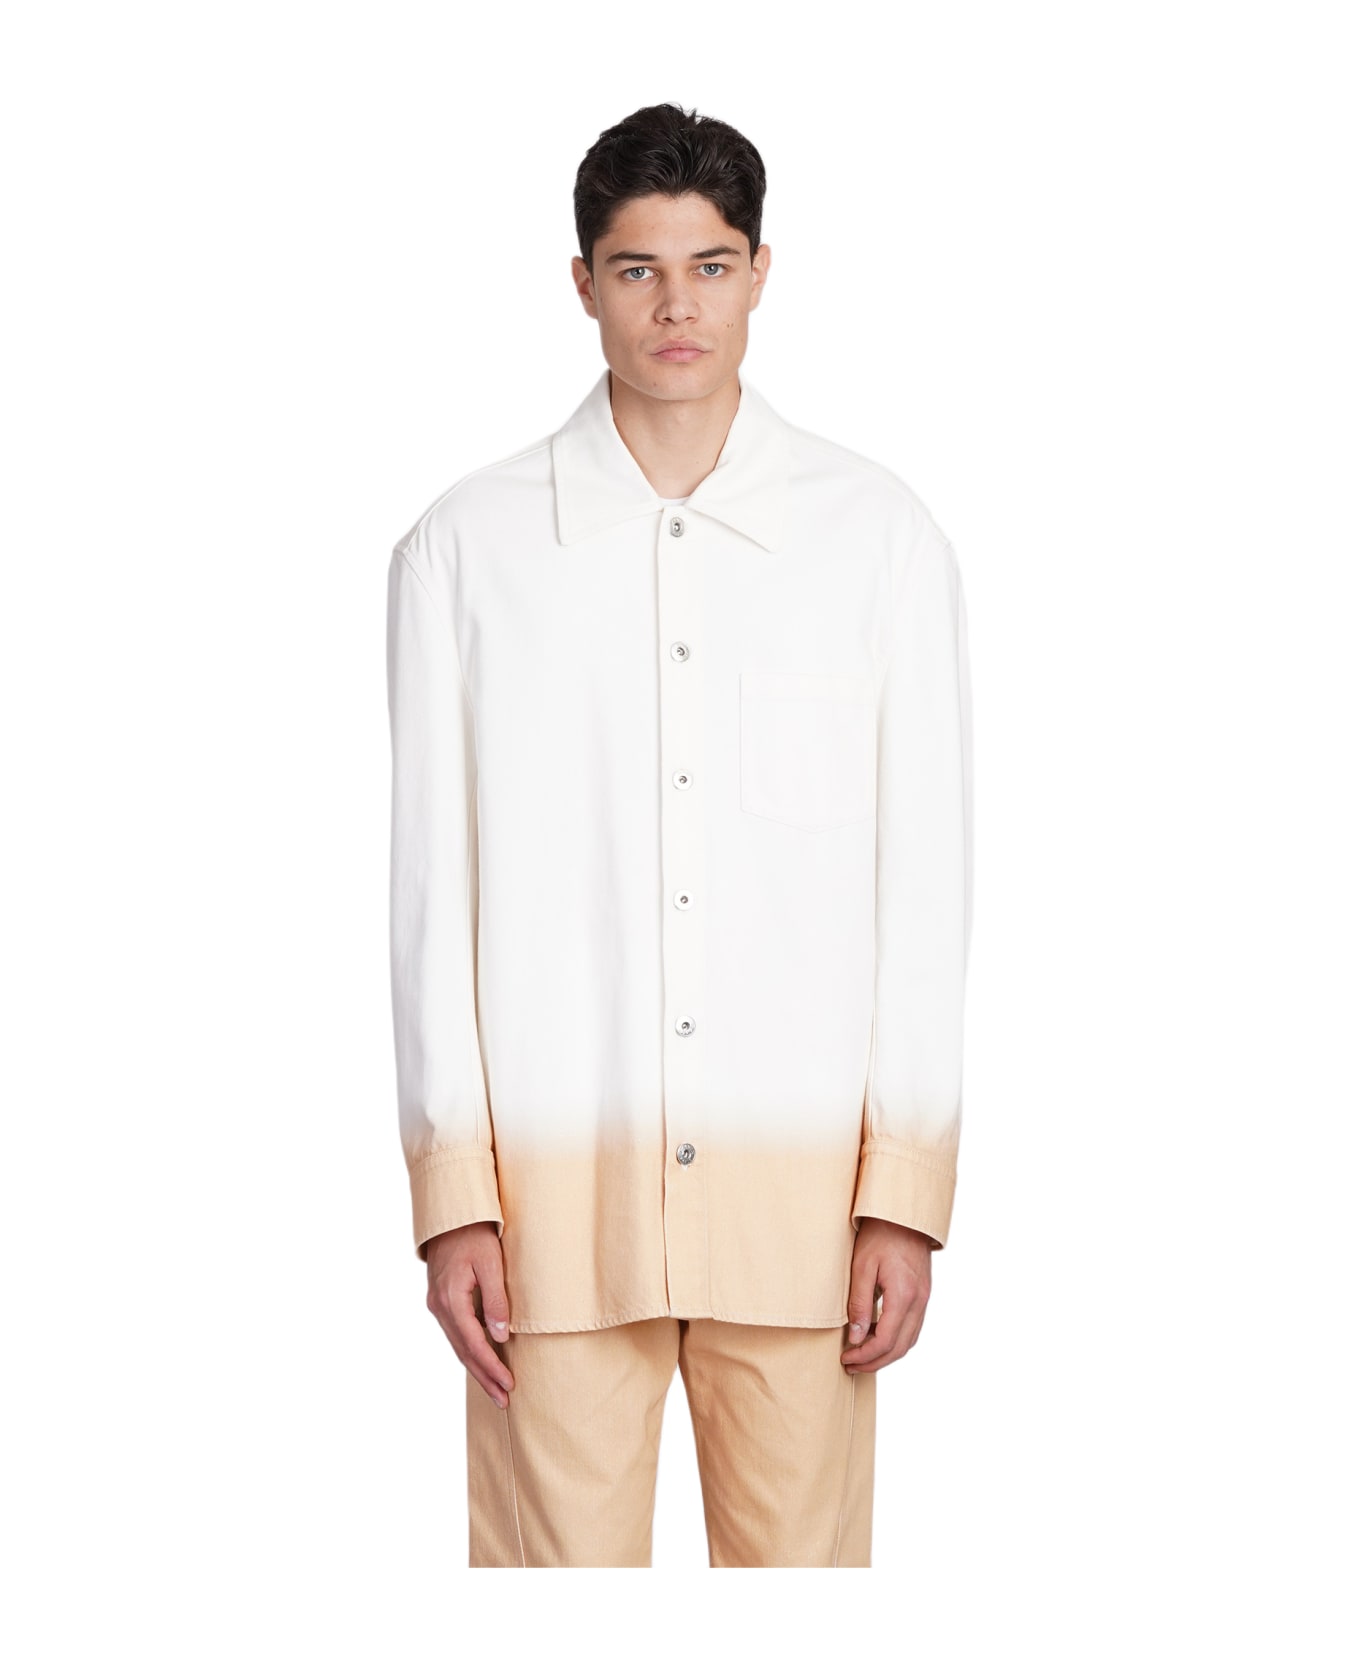 Lanvin Denim Jackets In White Cotton - white